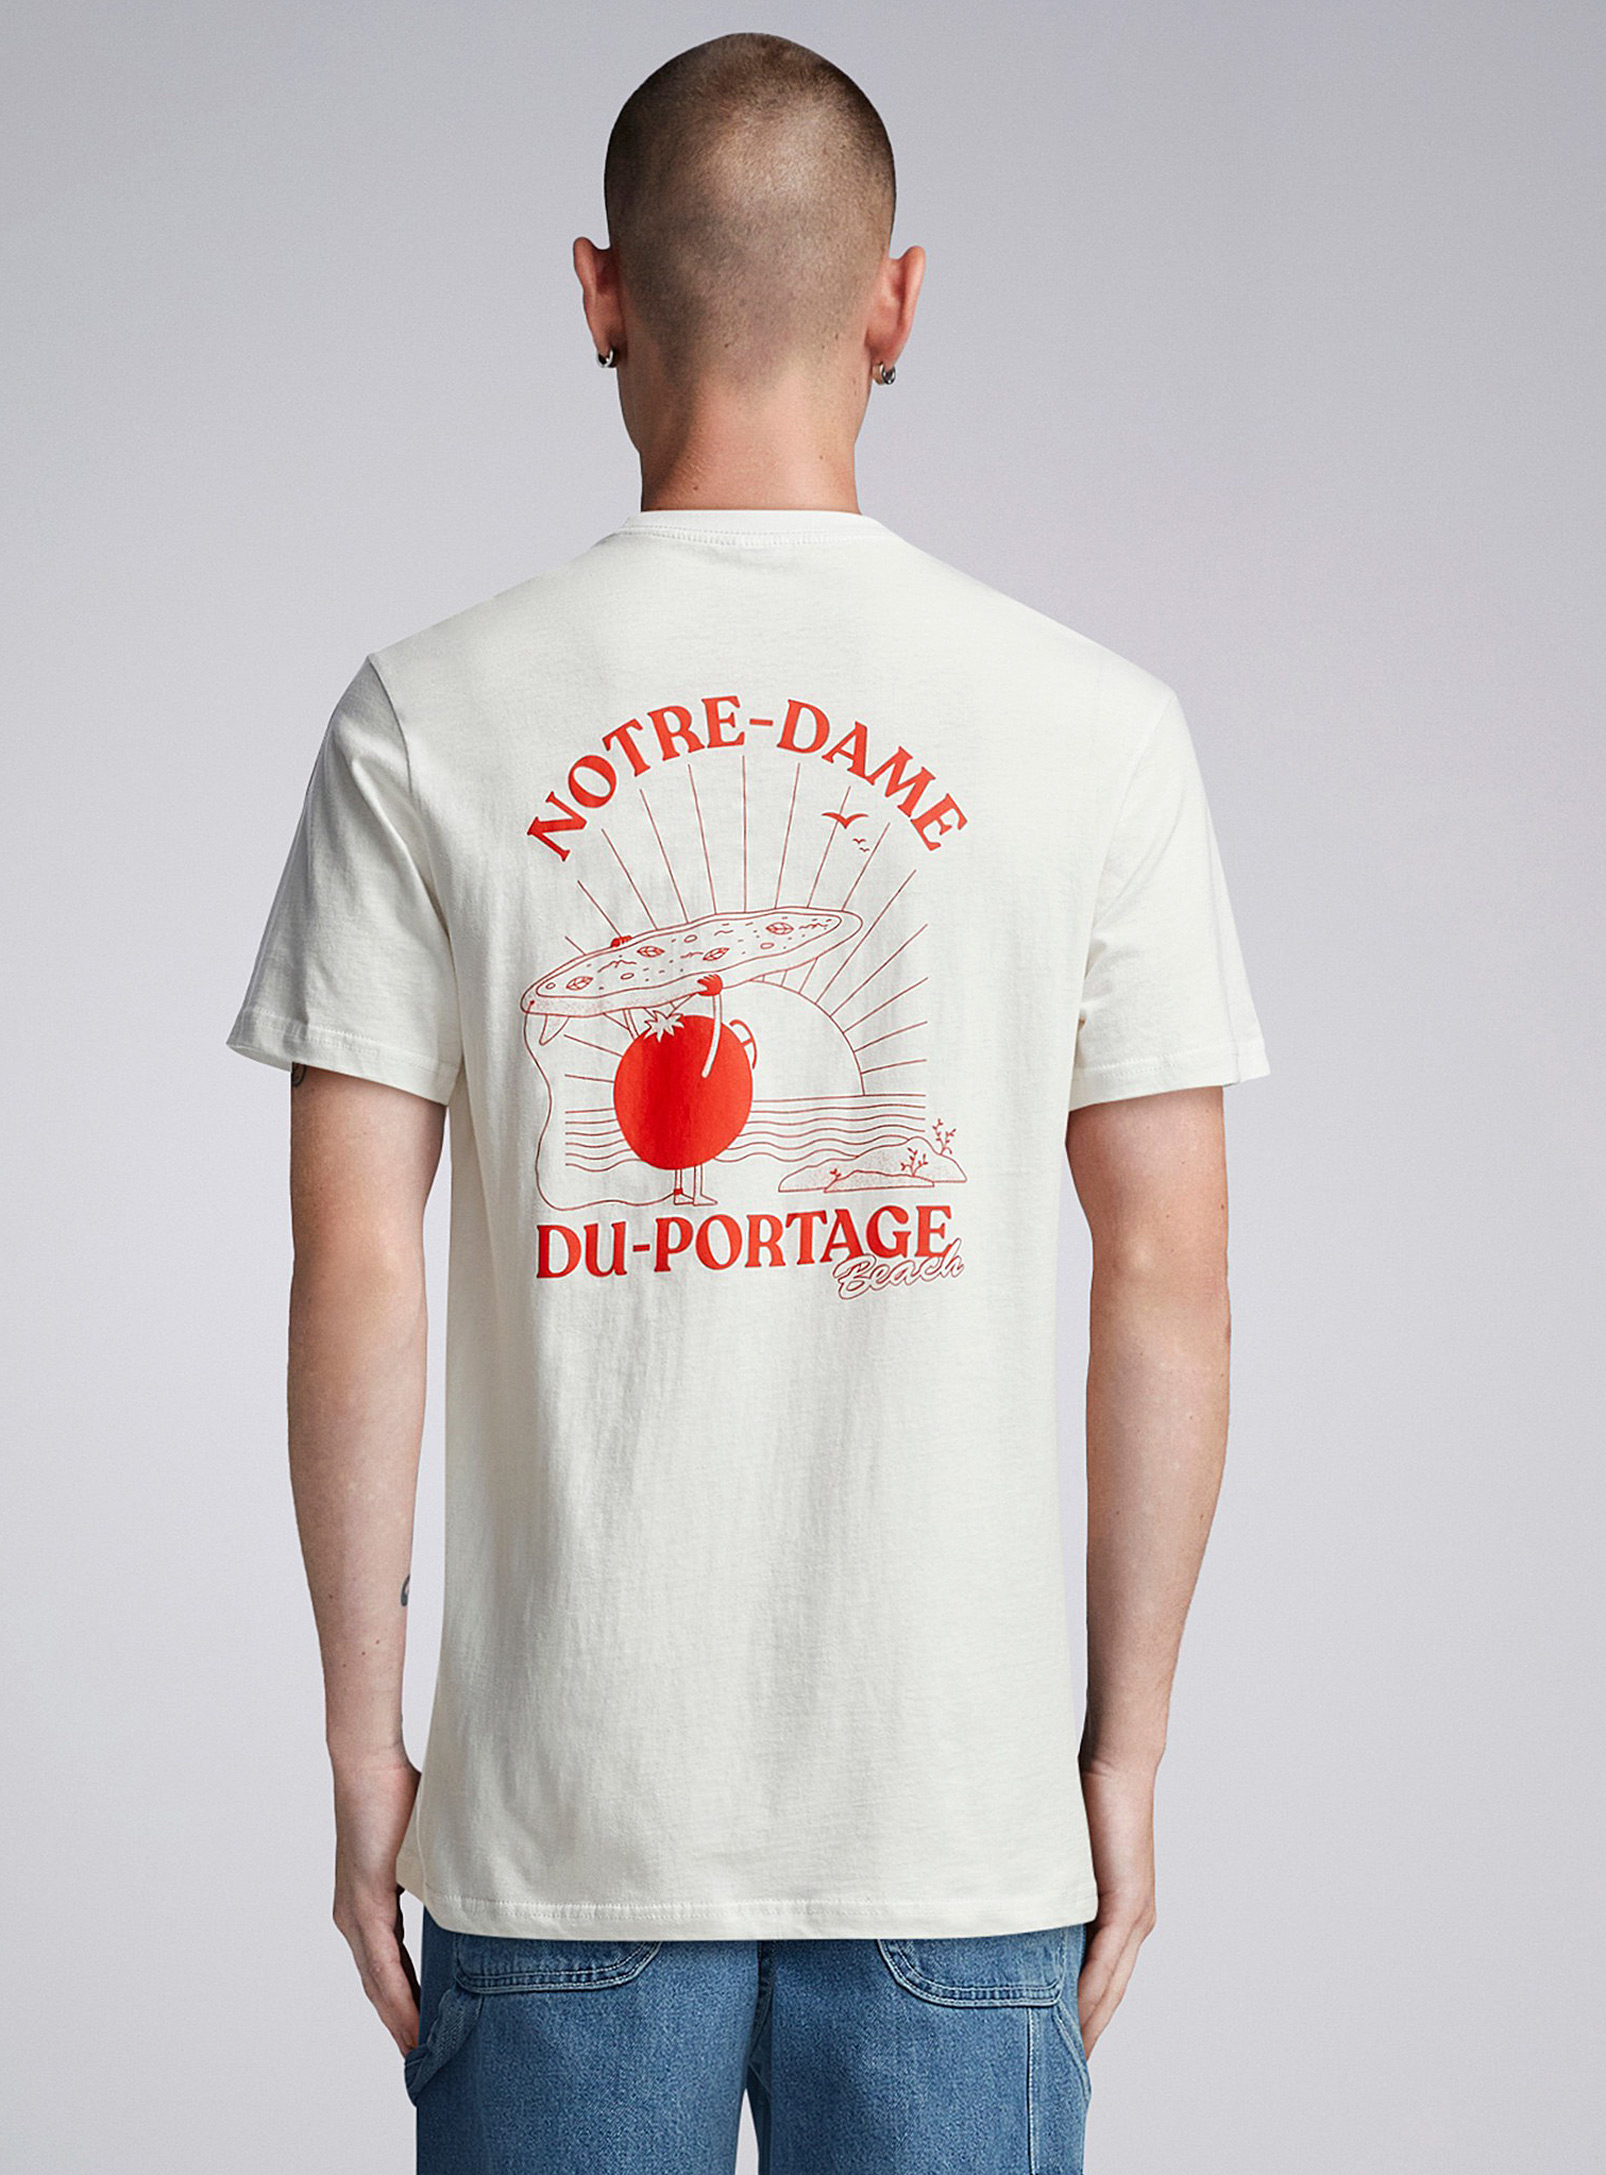 Djab - Le t-shirt Pizzeria des Battures